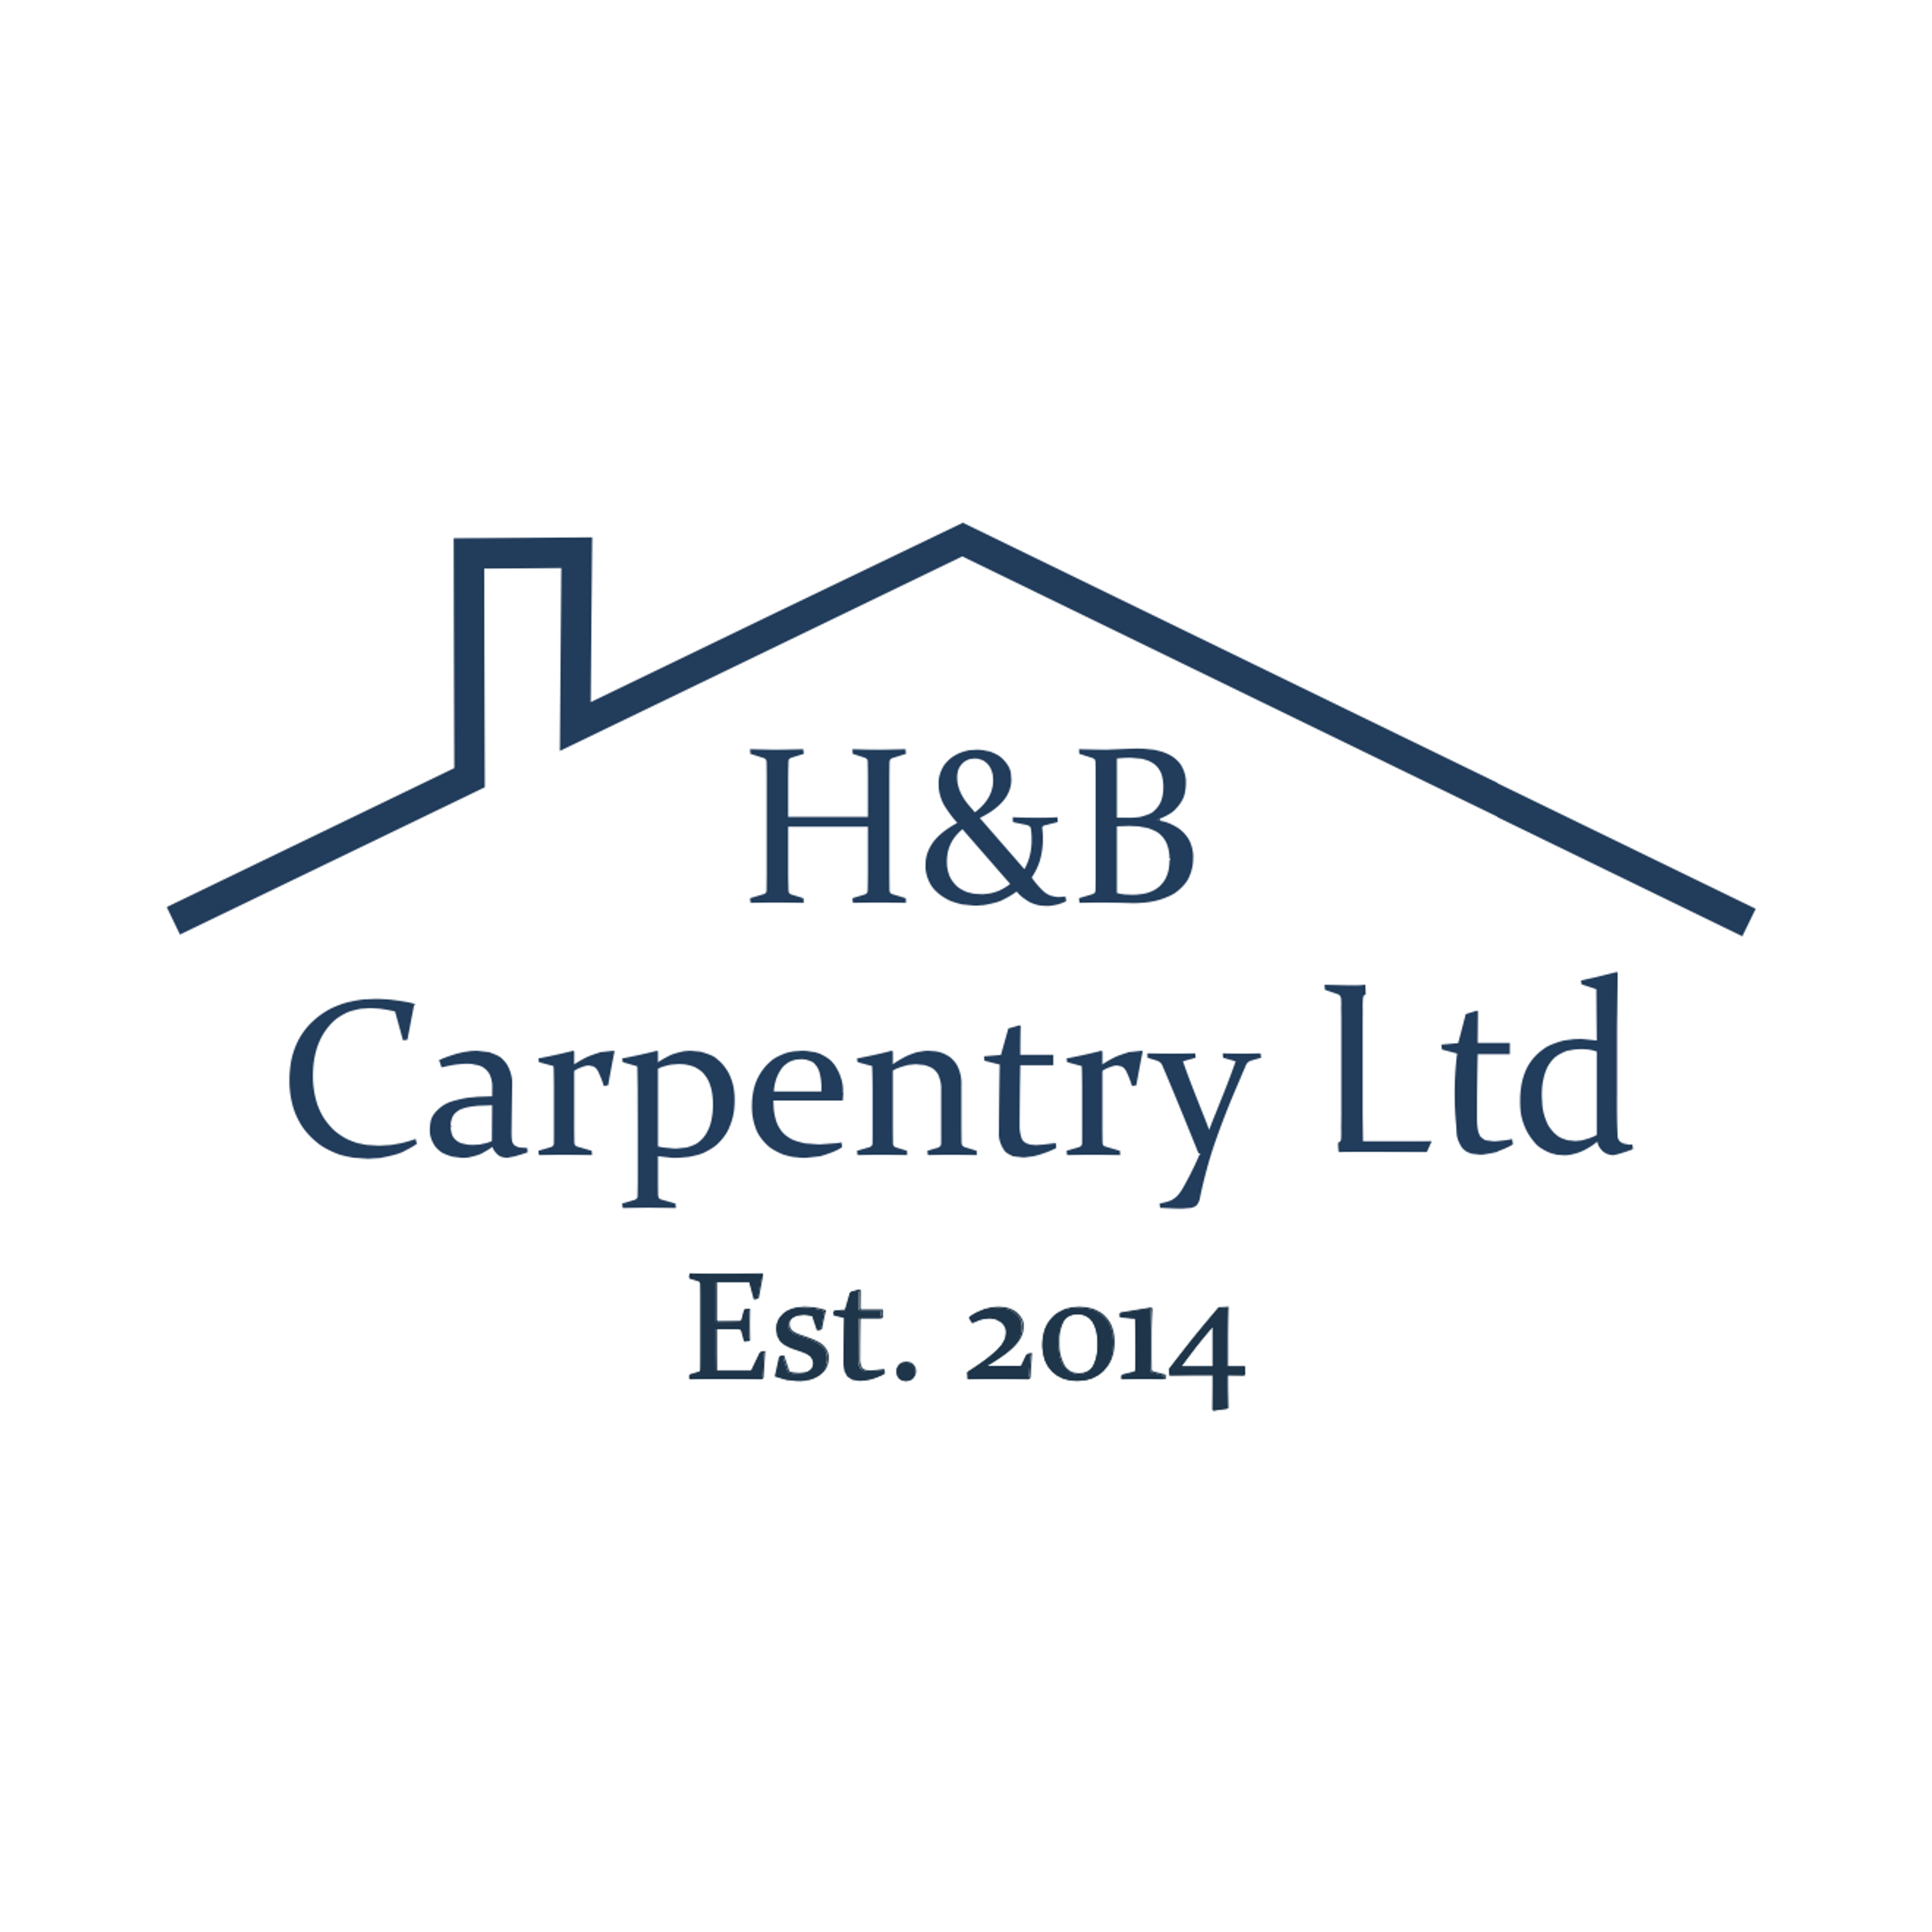 H&B Carpentry Ltd